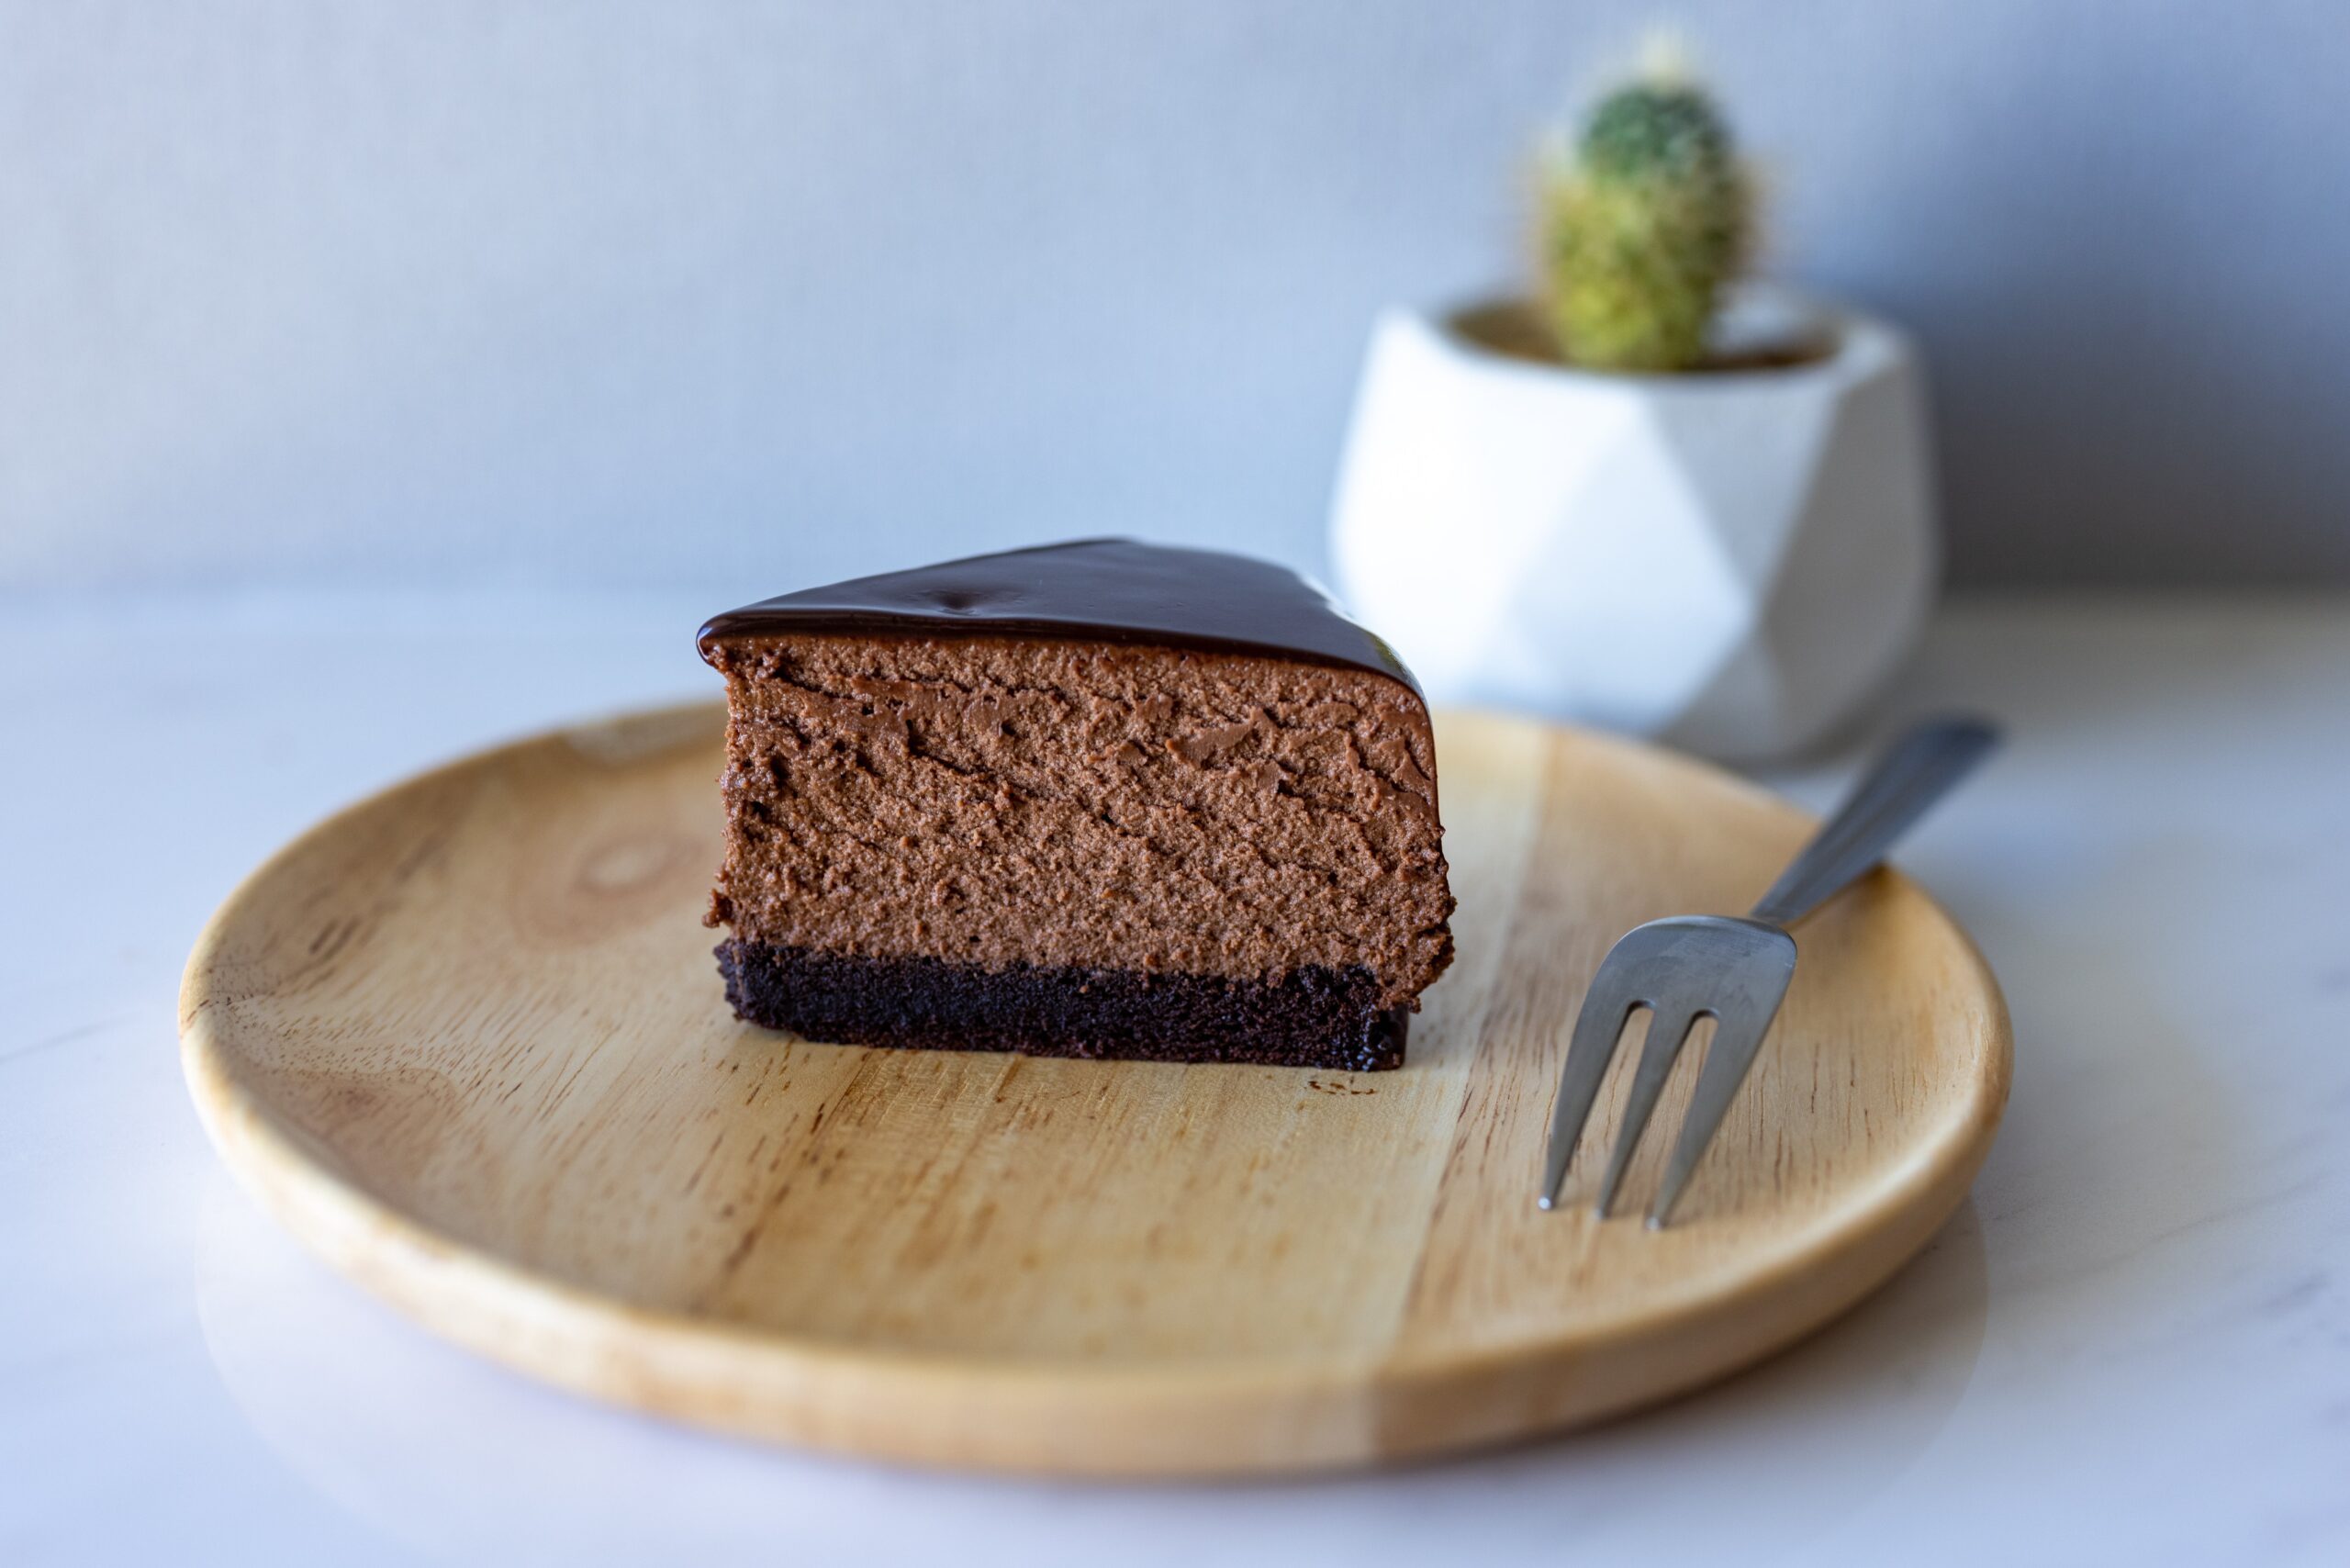 Na slici se nalazi komad čokoladne torte na drvenom tanjuru. Torta ima bogati sloj tamne čokolade na vrhu i izgleda vlažno i gusto. Vilica je postavljena pored komada torte, što ukazuje da je spremna za jelo. Tanjur je okrugao i izrađen je od svijetlog drva.